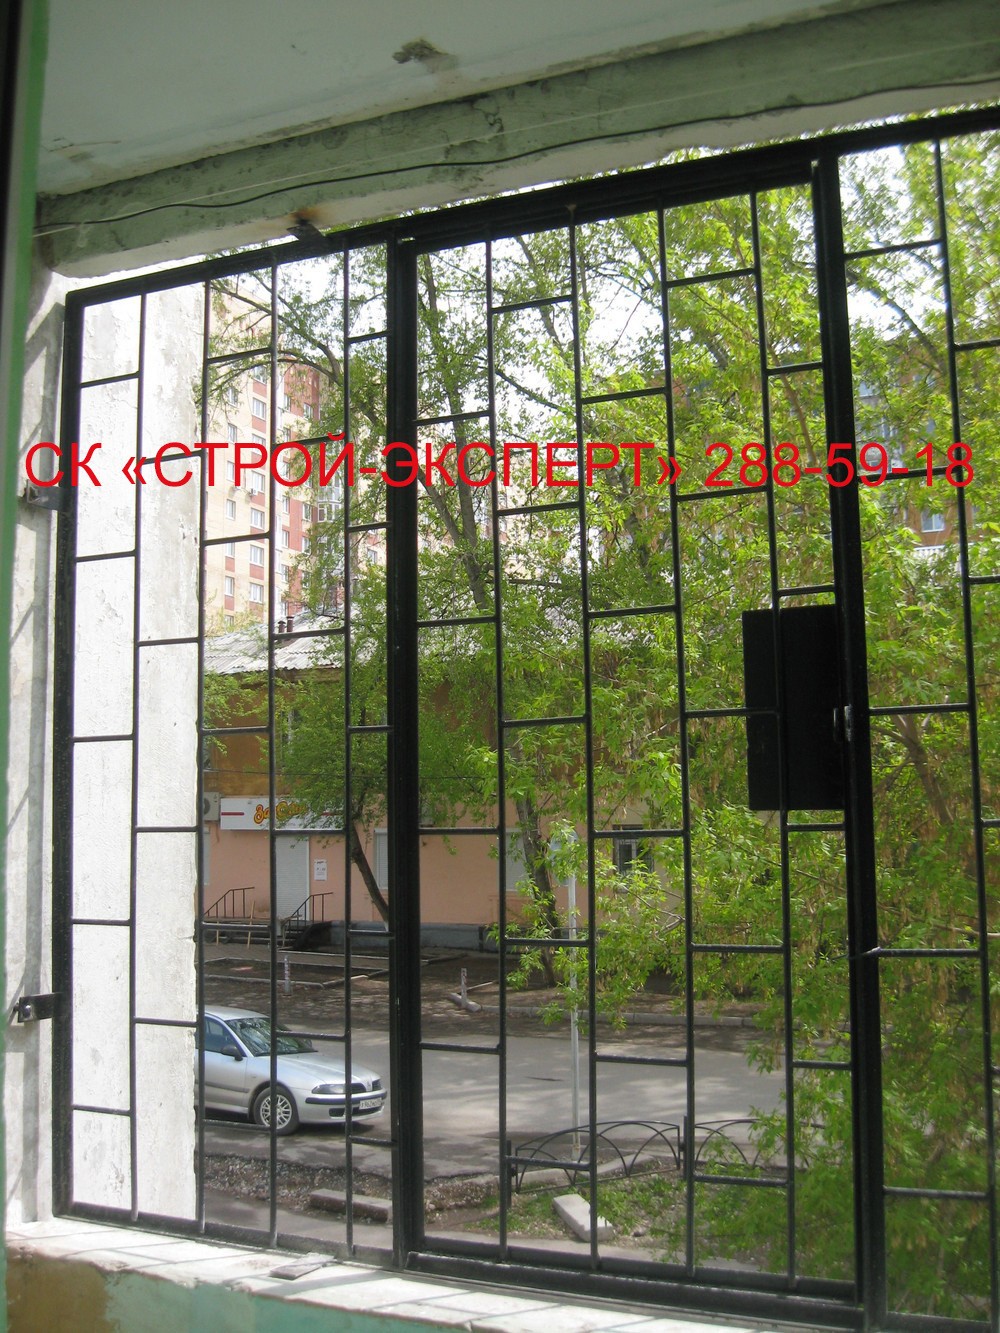 ФОТО-ГАЛЕРЕЯ - Решетки фото - Раздвижные решетки на окна Пермь